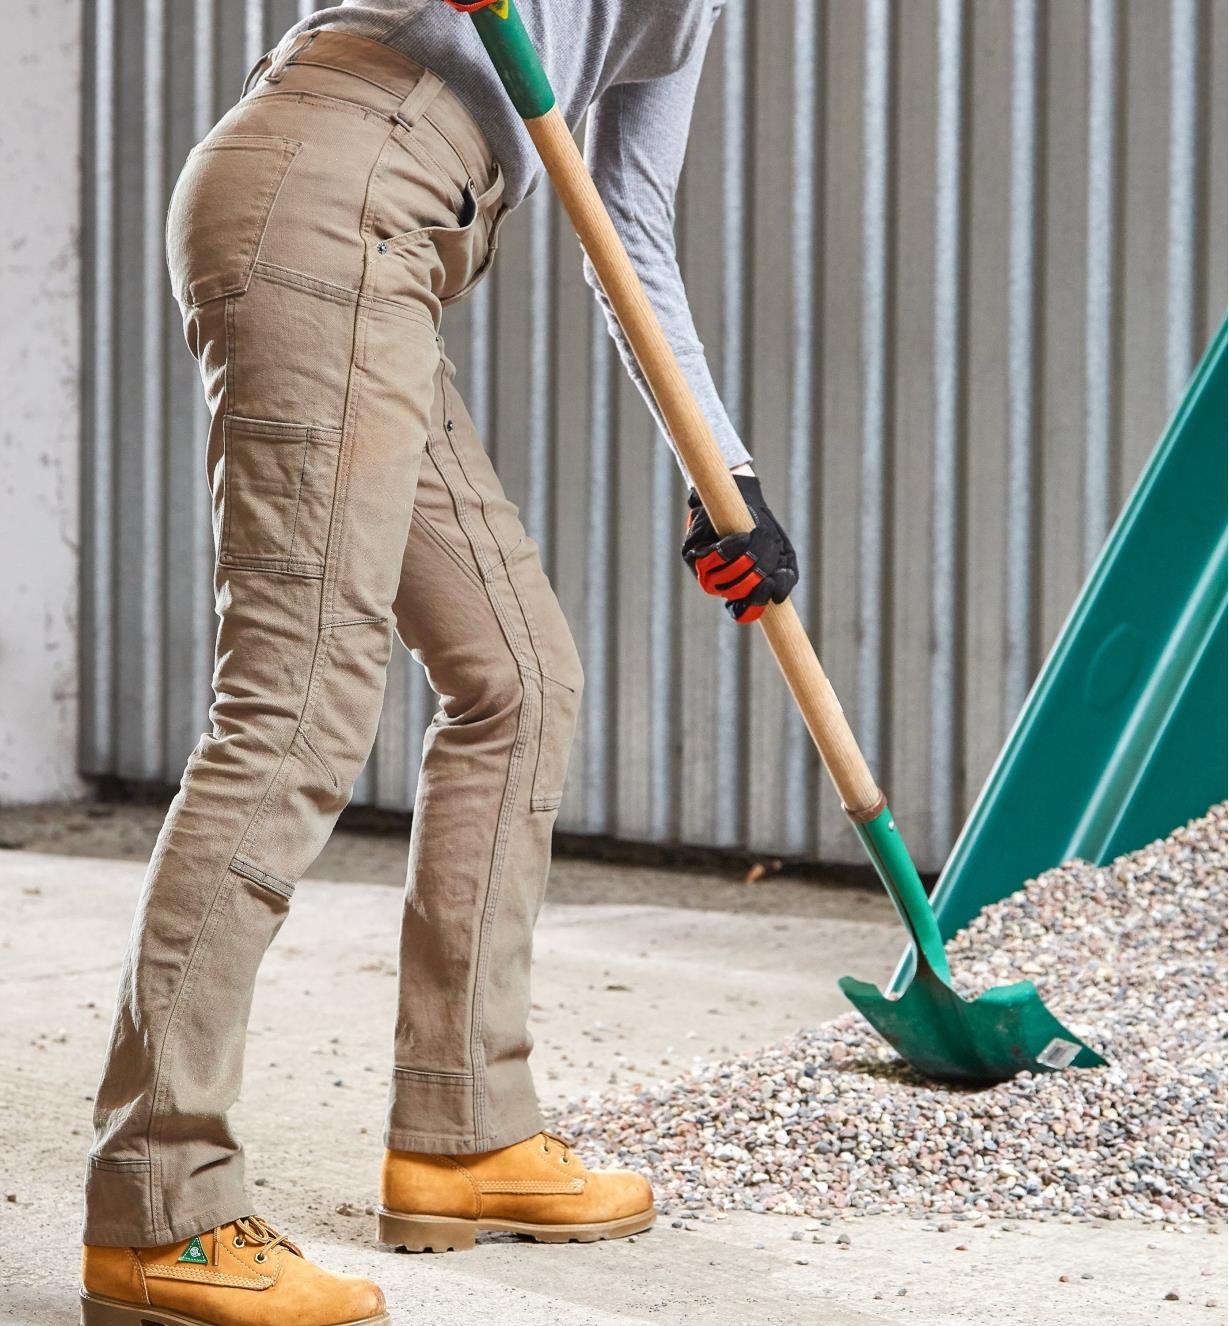 A woman wearing Dovetail pants shovels gravel